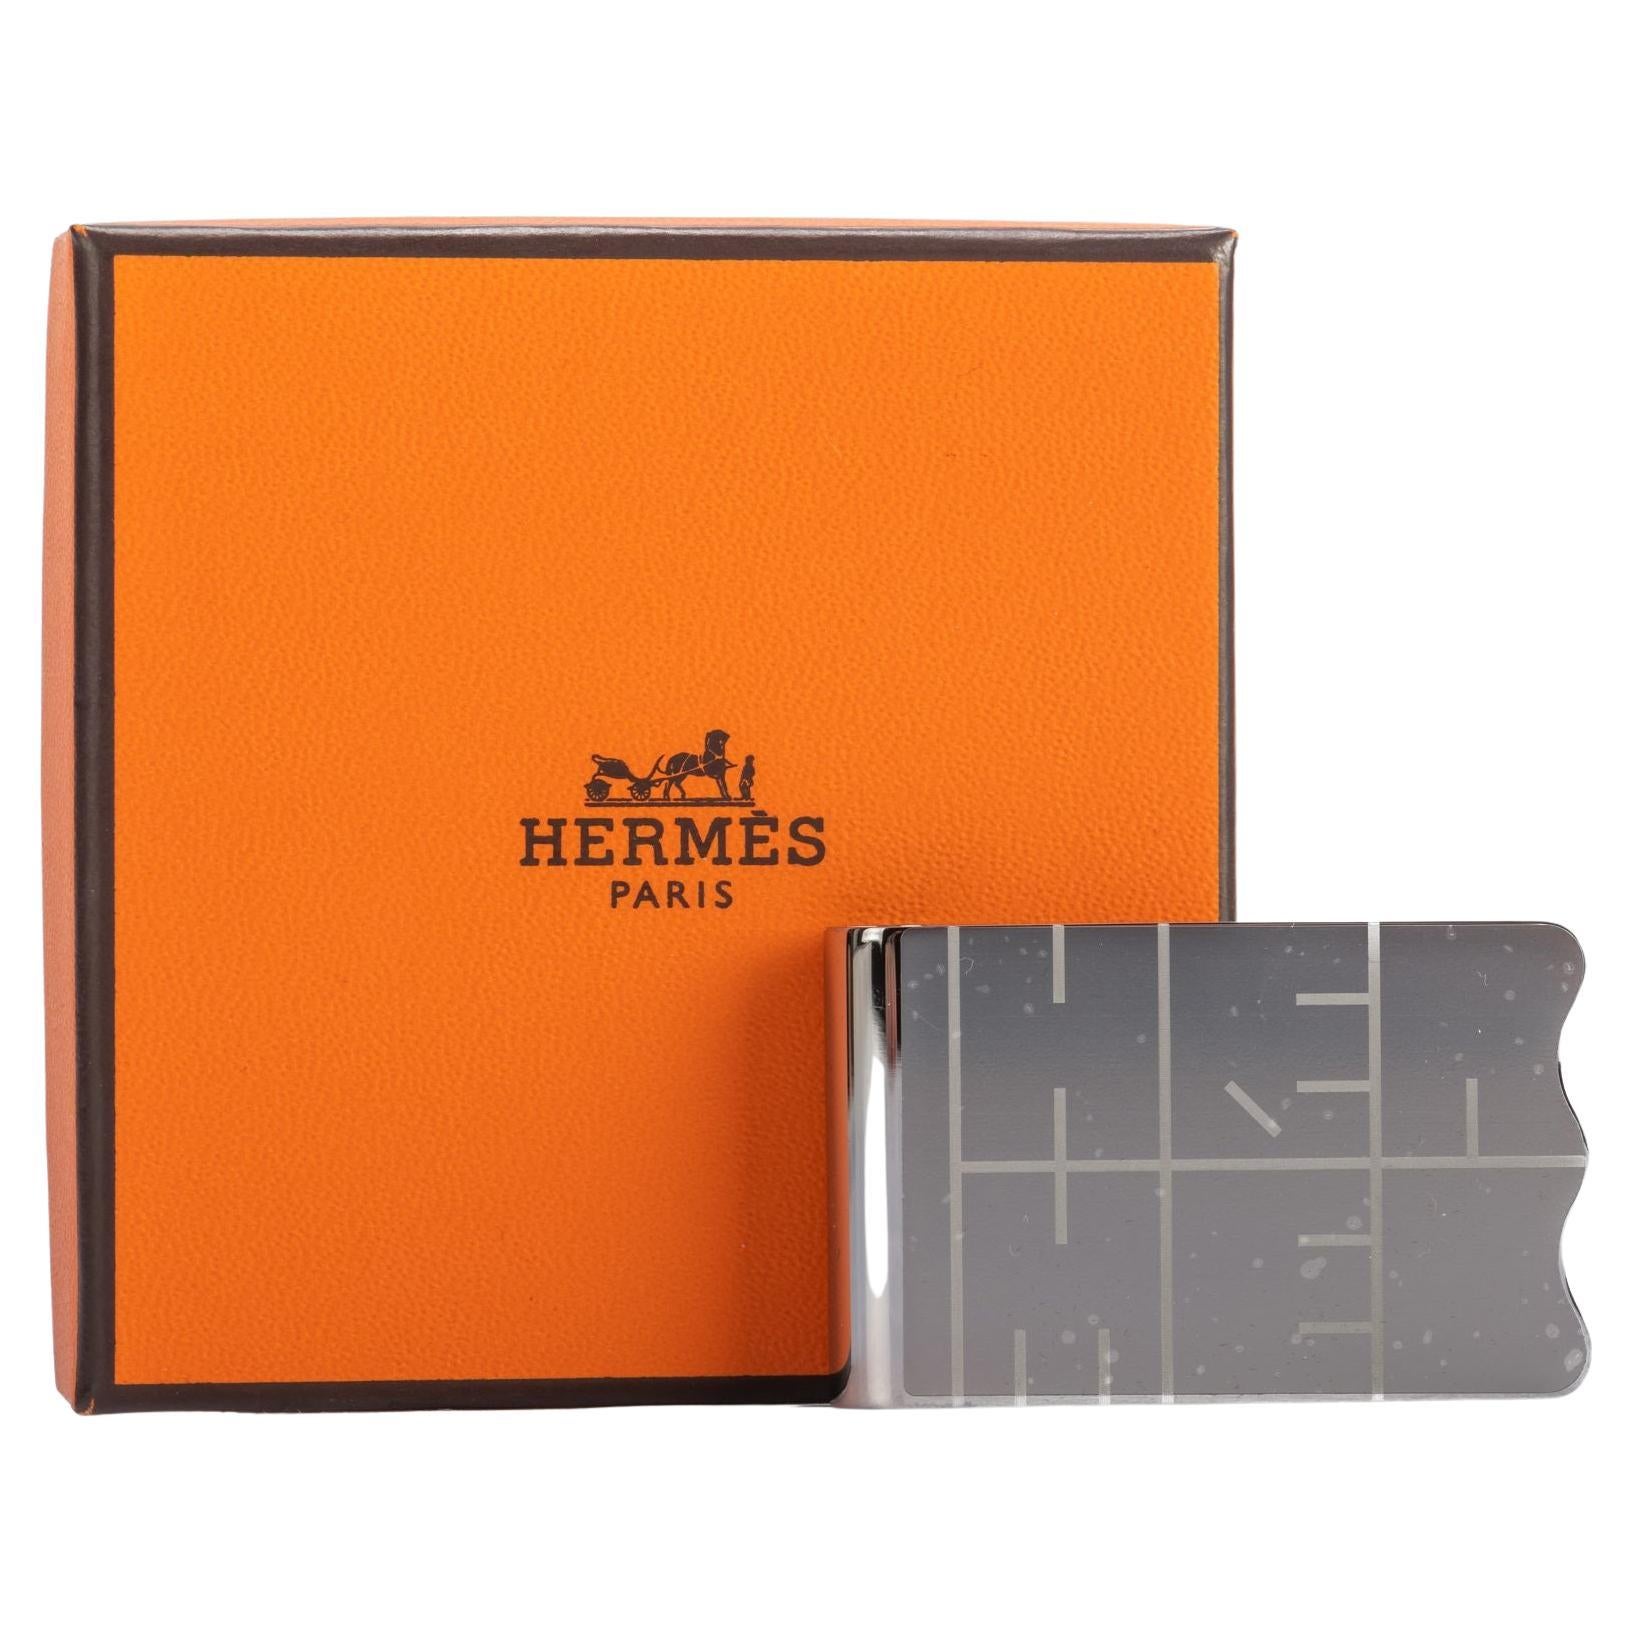 Hermes Money Clip - 6 For Sale on 1stDibs